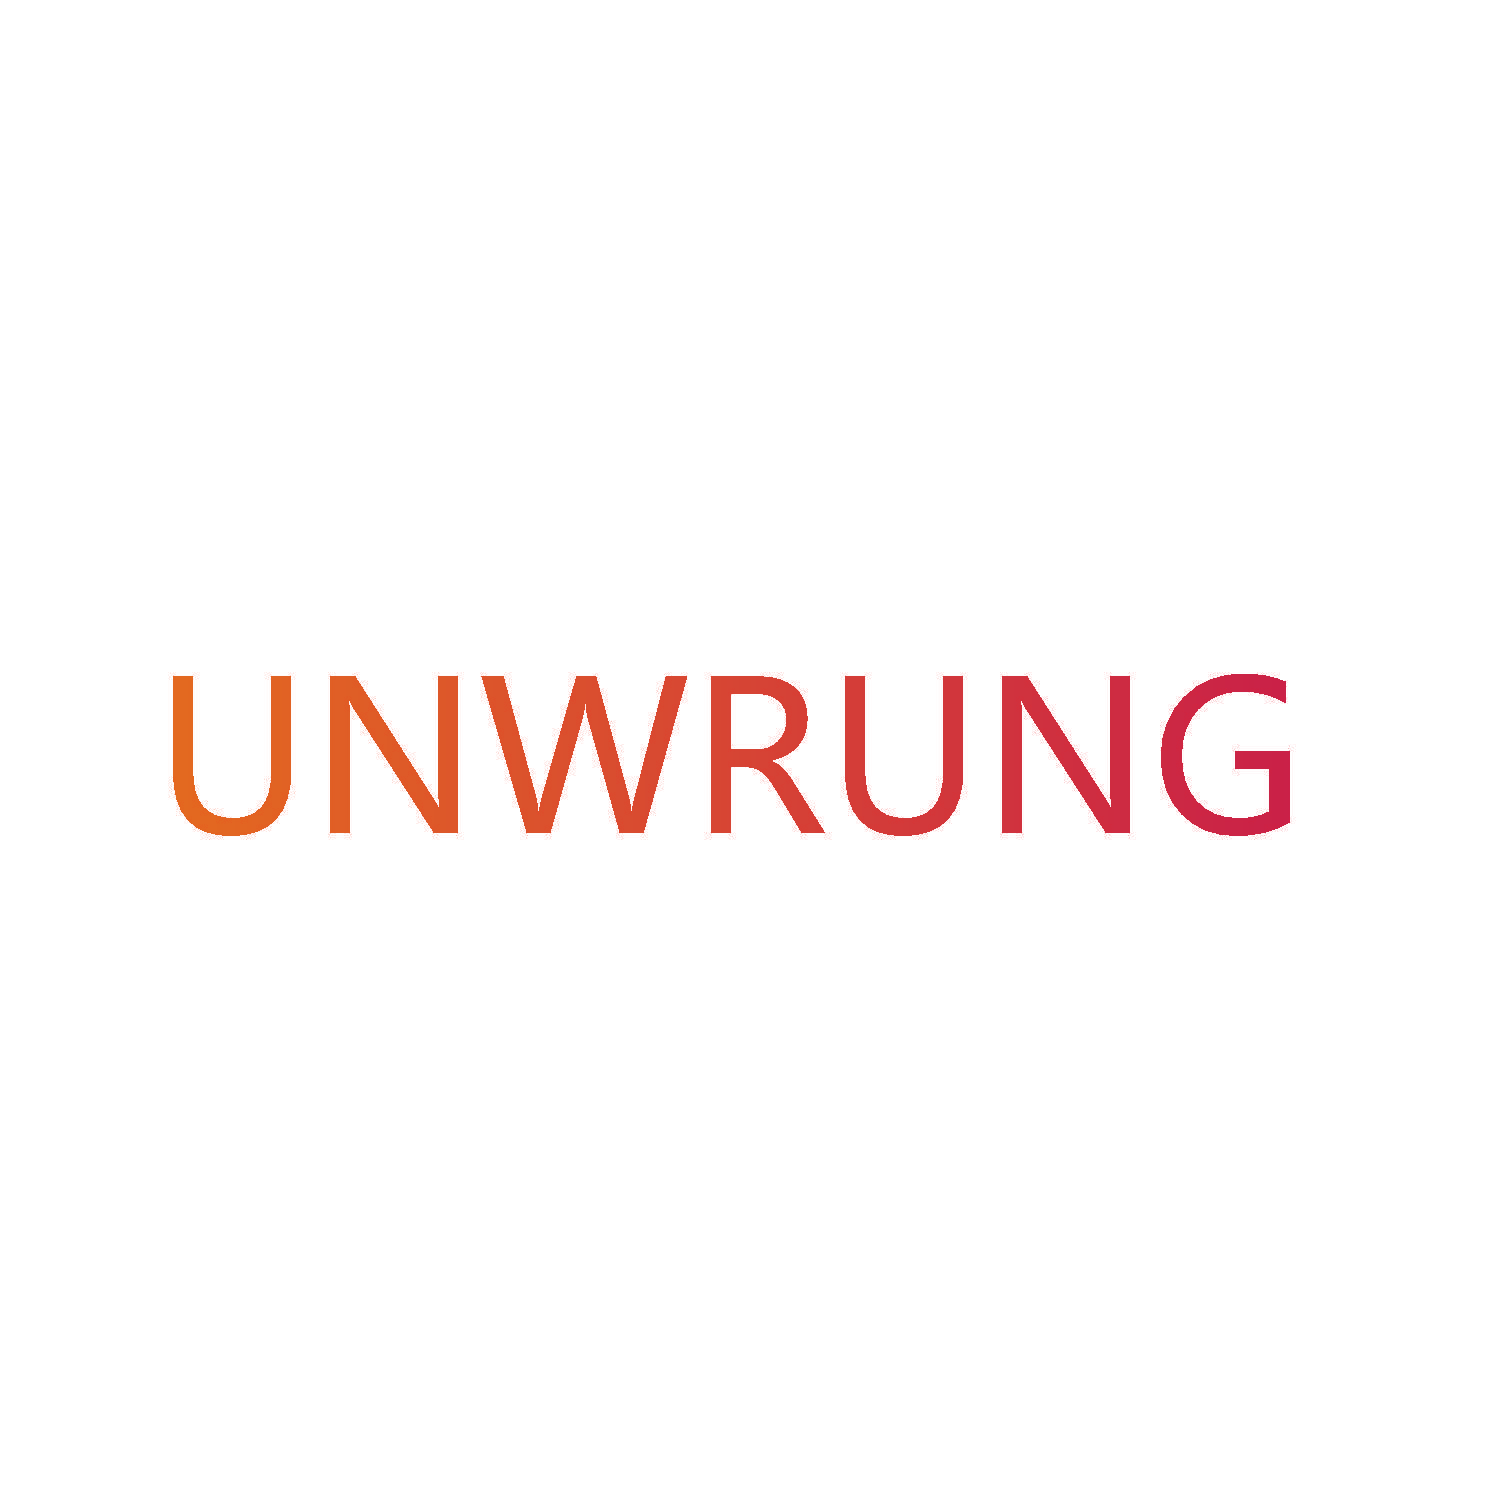 UNWRUNG